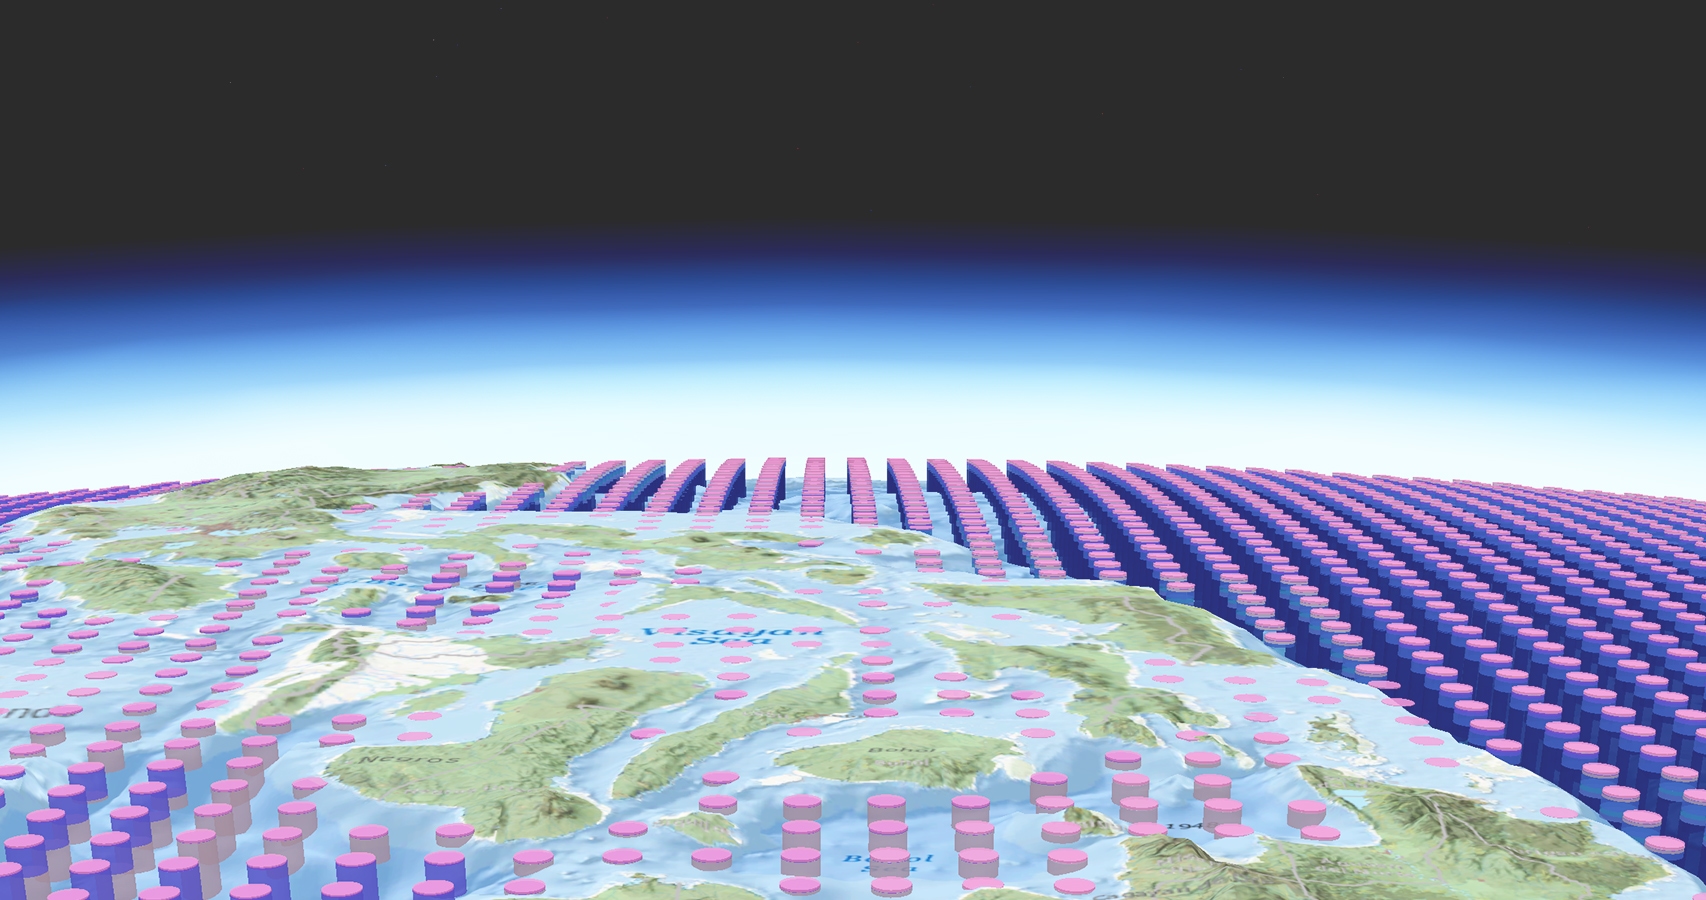 Grafika przedstawiająca równe szeregi różowych i fioletowych cylindrów, a na to nałożona stylizowana konturowa mapa Ziemi